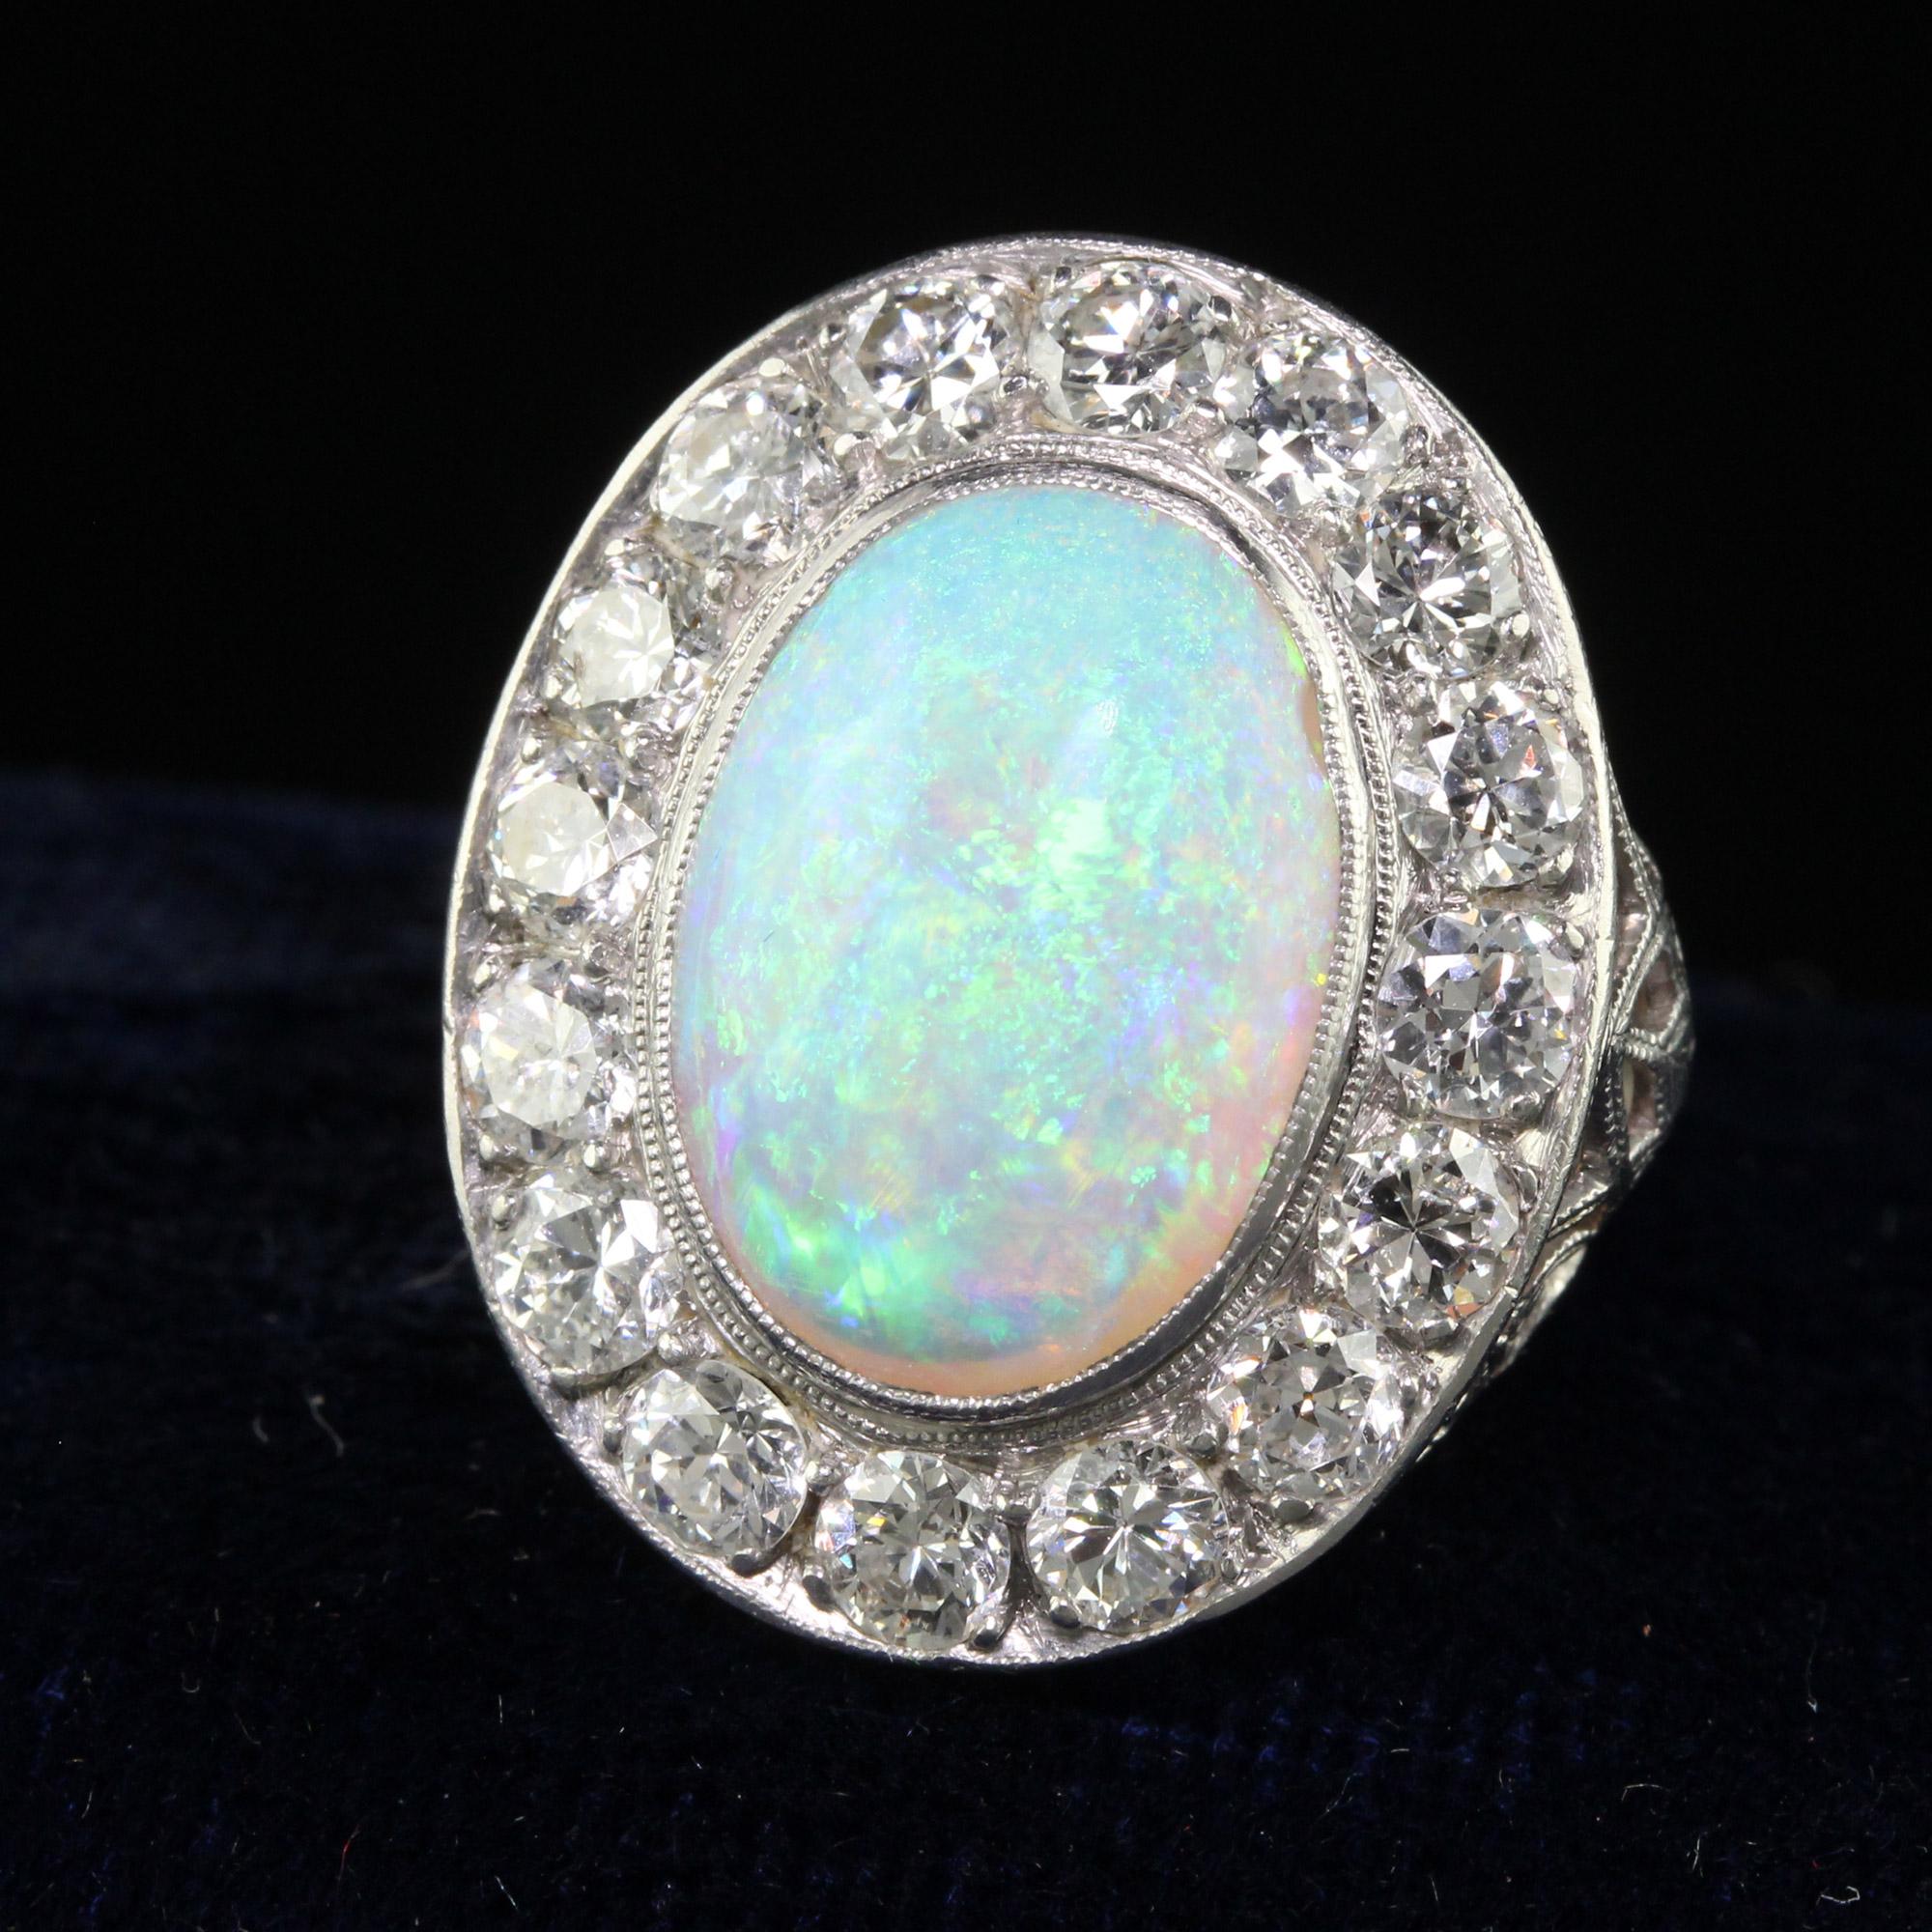 Schöne antike Art Deco Platin Opal und Old Euro Diamond Halo Ring. Dieser wunderschöne Art-Déco-Cocktailring ist aus Platin gefertigt. In der Mitte befindet sich ein natürlicher Opal mit einem schönen Farbenspiel. Der zentrale Opal ist von weißen